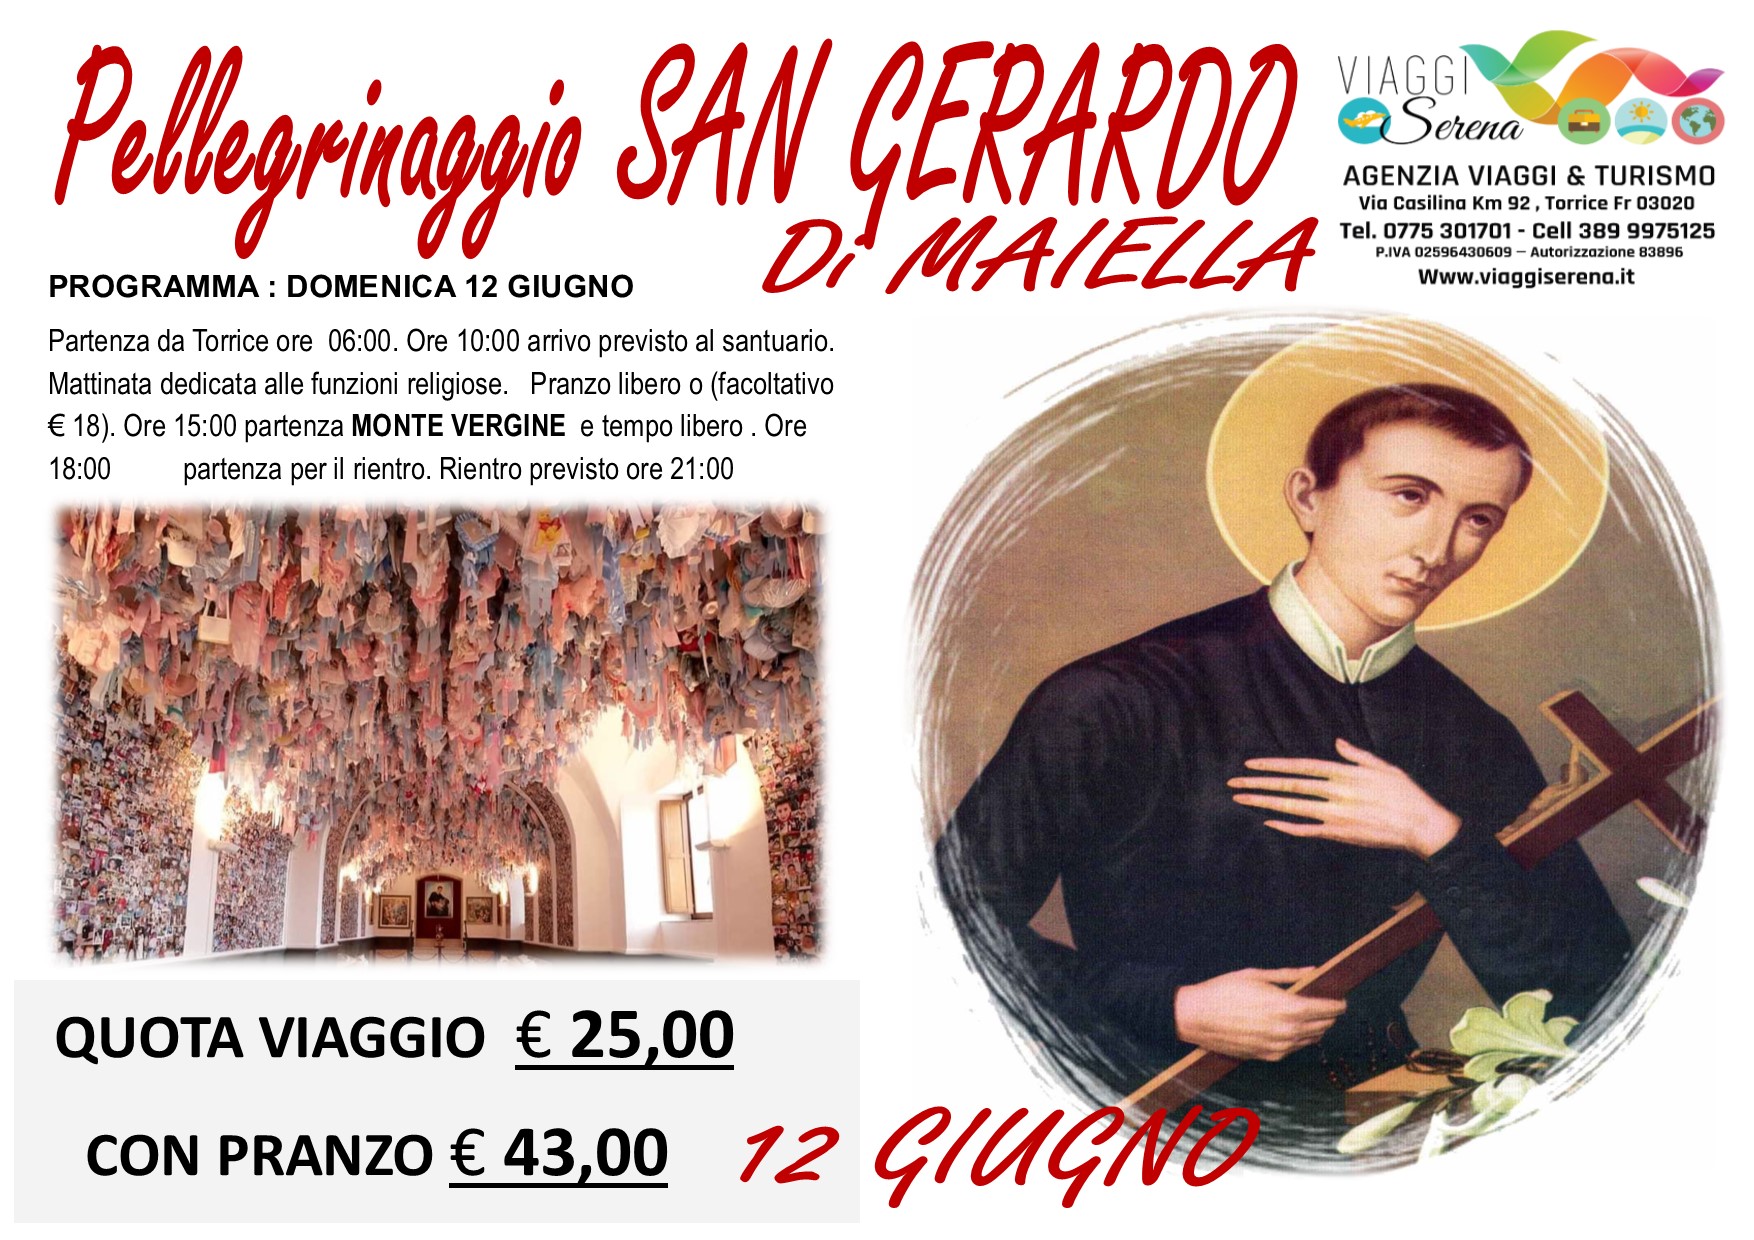 Viaggi di Gruppo: San Gerardo di Maiella& Monte Vergine  12 Giugno € 30,00